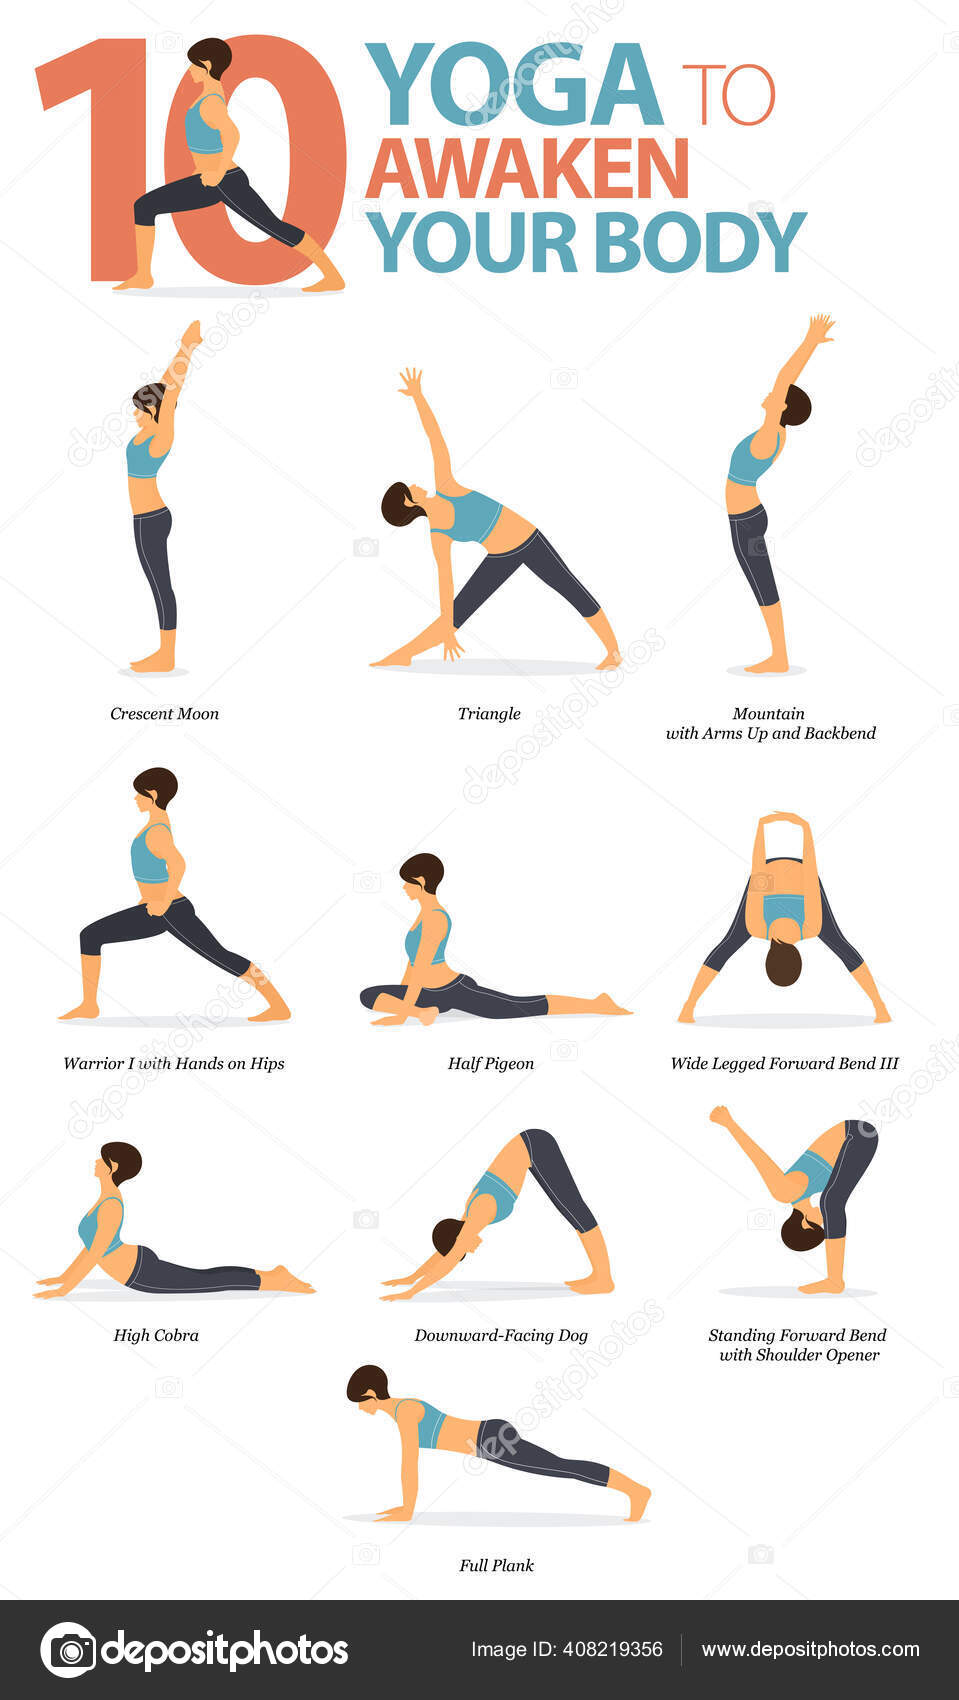 21 Basic Yoga Poses for Beginners: Plus Vids | Nerd Fitness